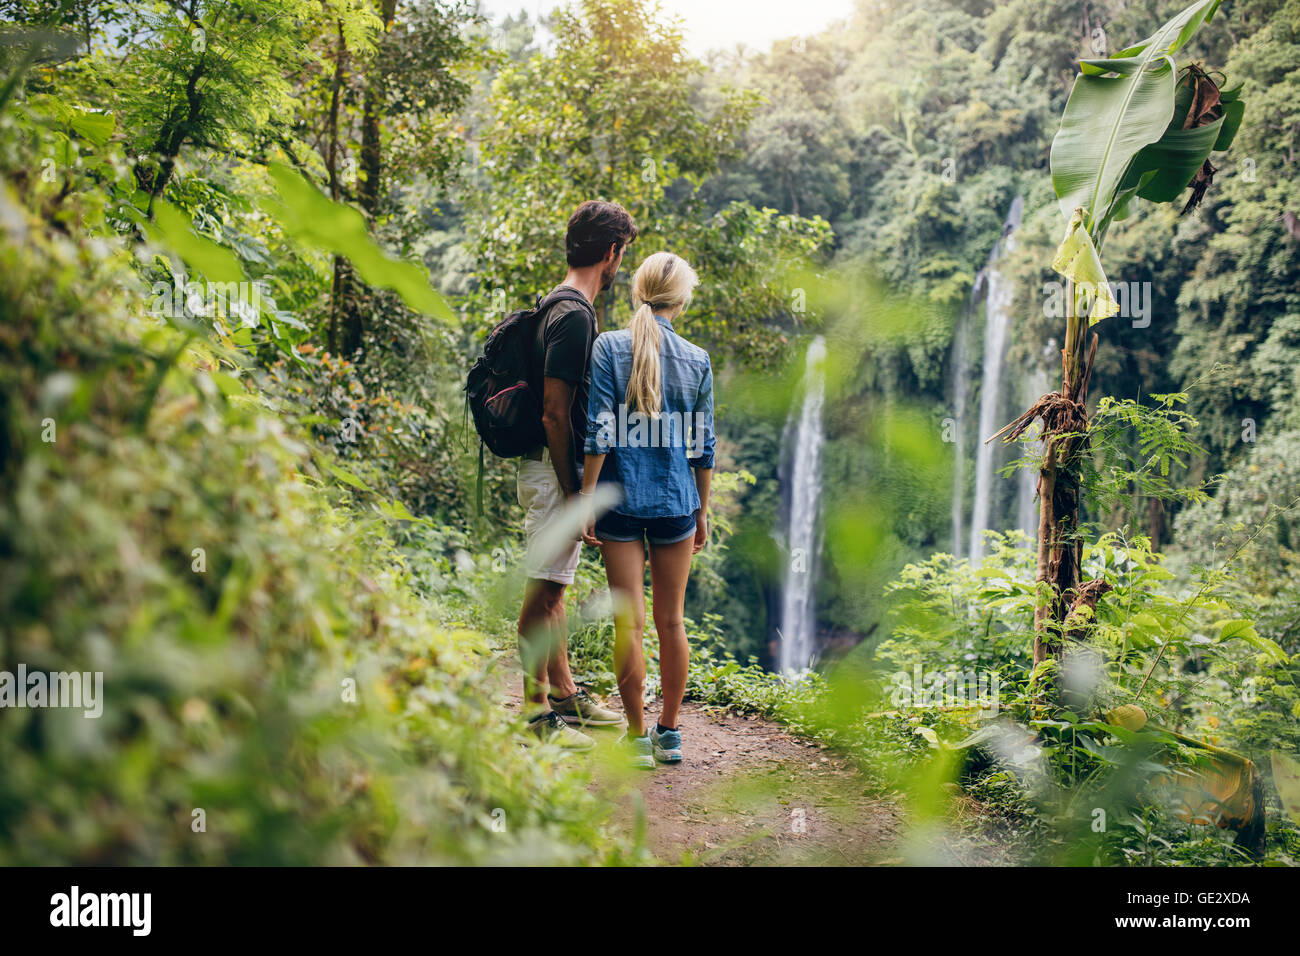 Rückansicht des junges Paar auf der Suche am Wasserfall. Zwei Wanderer im Wald stehen und Wasserfall anzeigen. Stockfoto